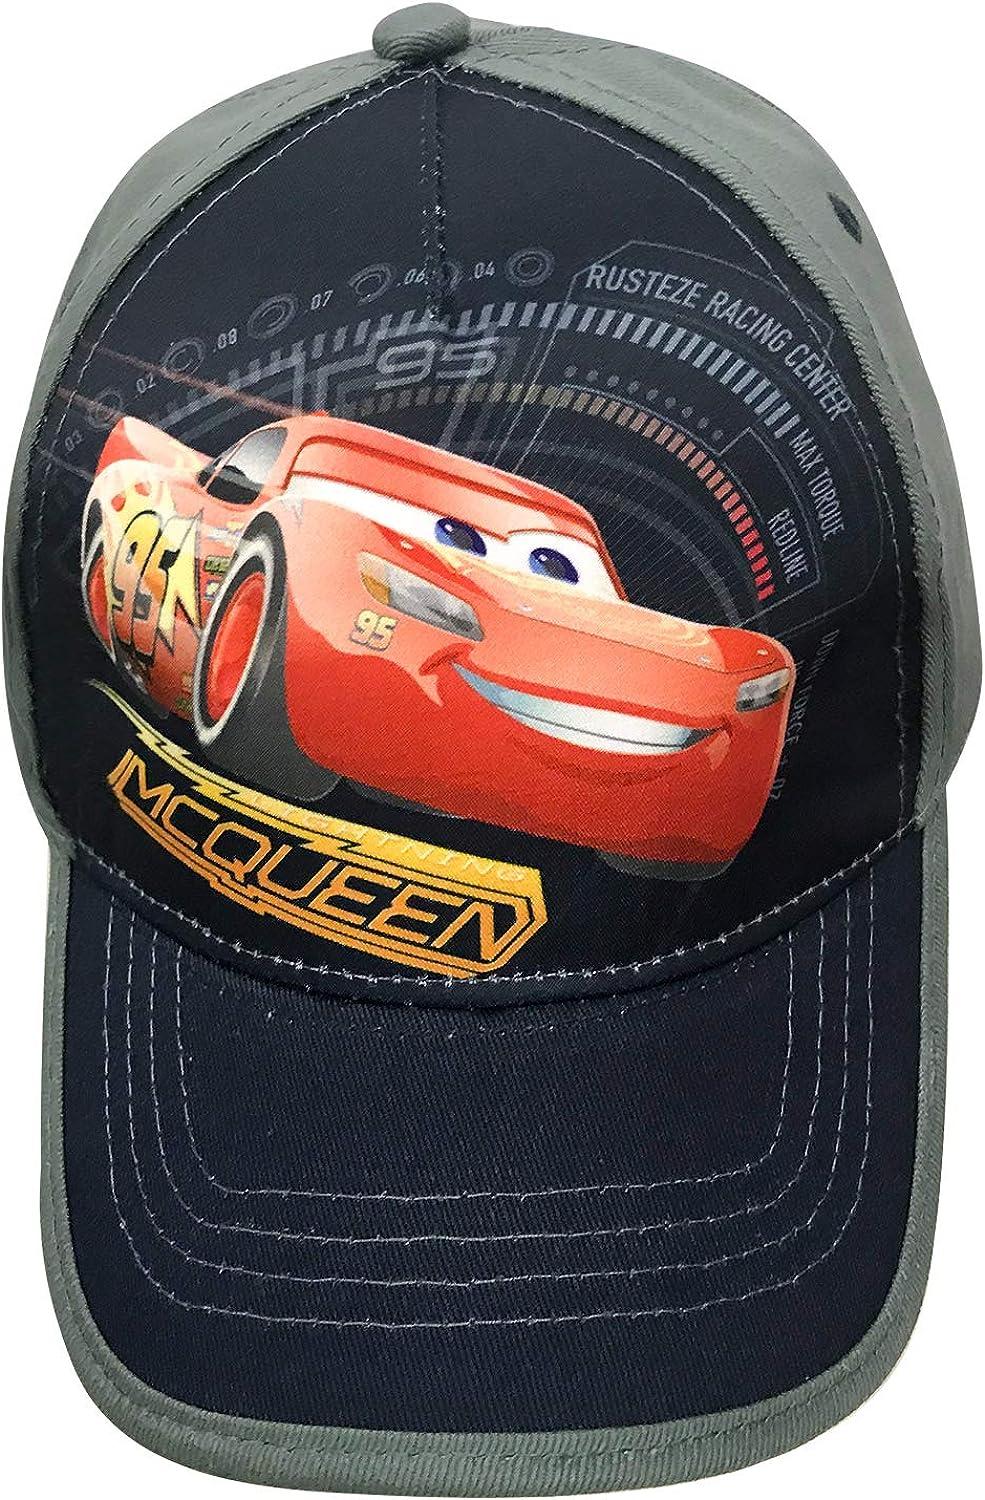 Disney Cars Toddler Baseball Hat for Boys Size 4-7 Lightning